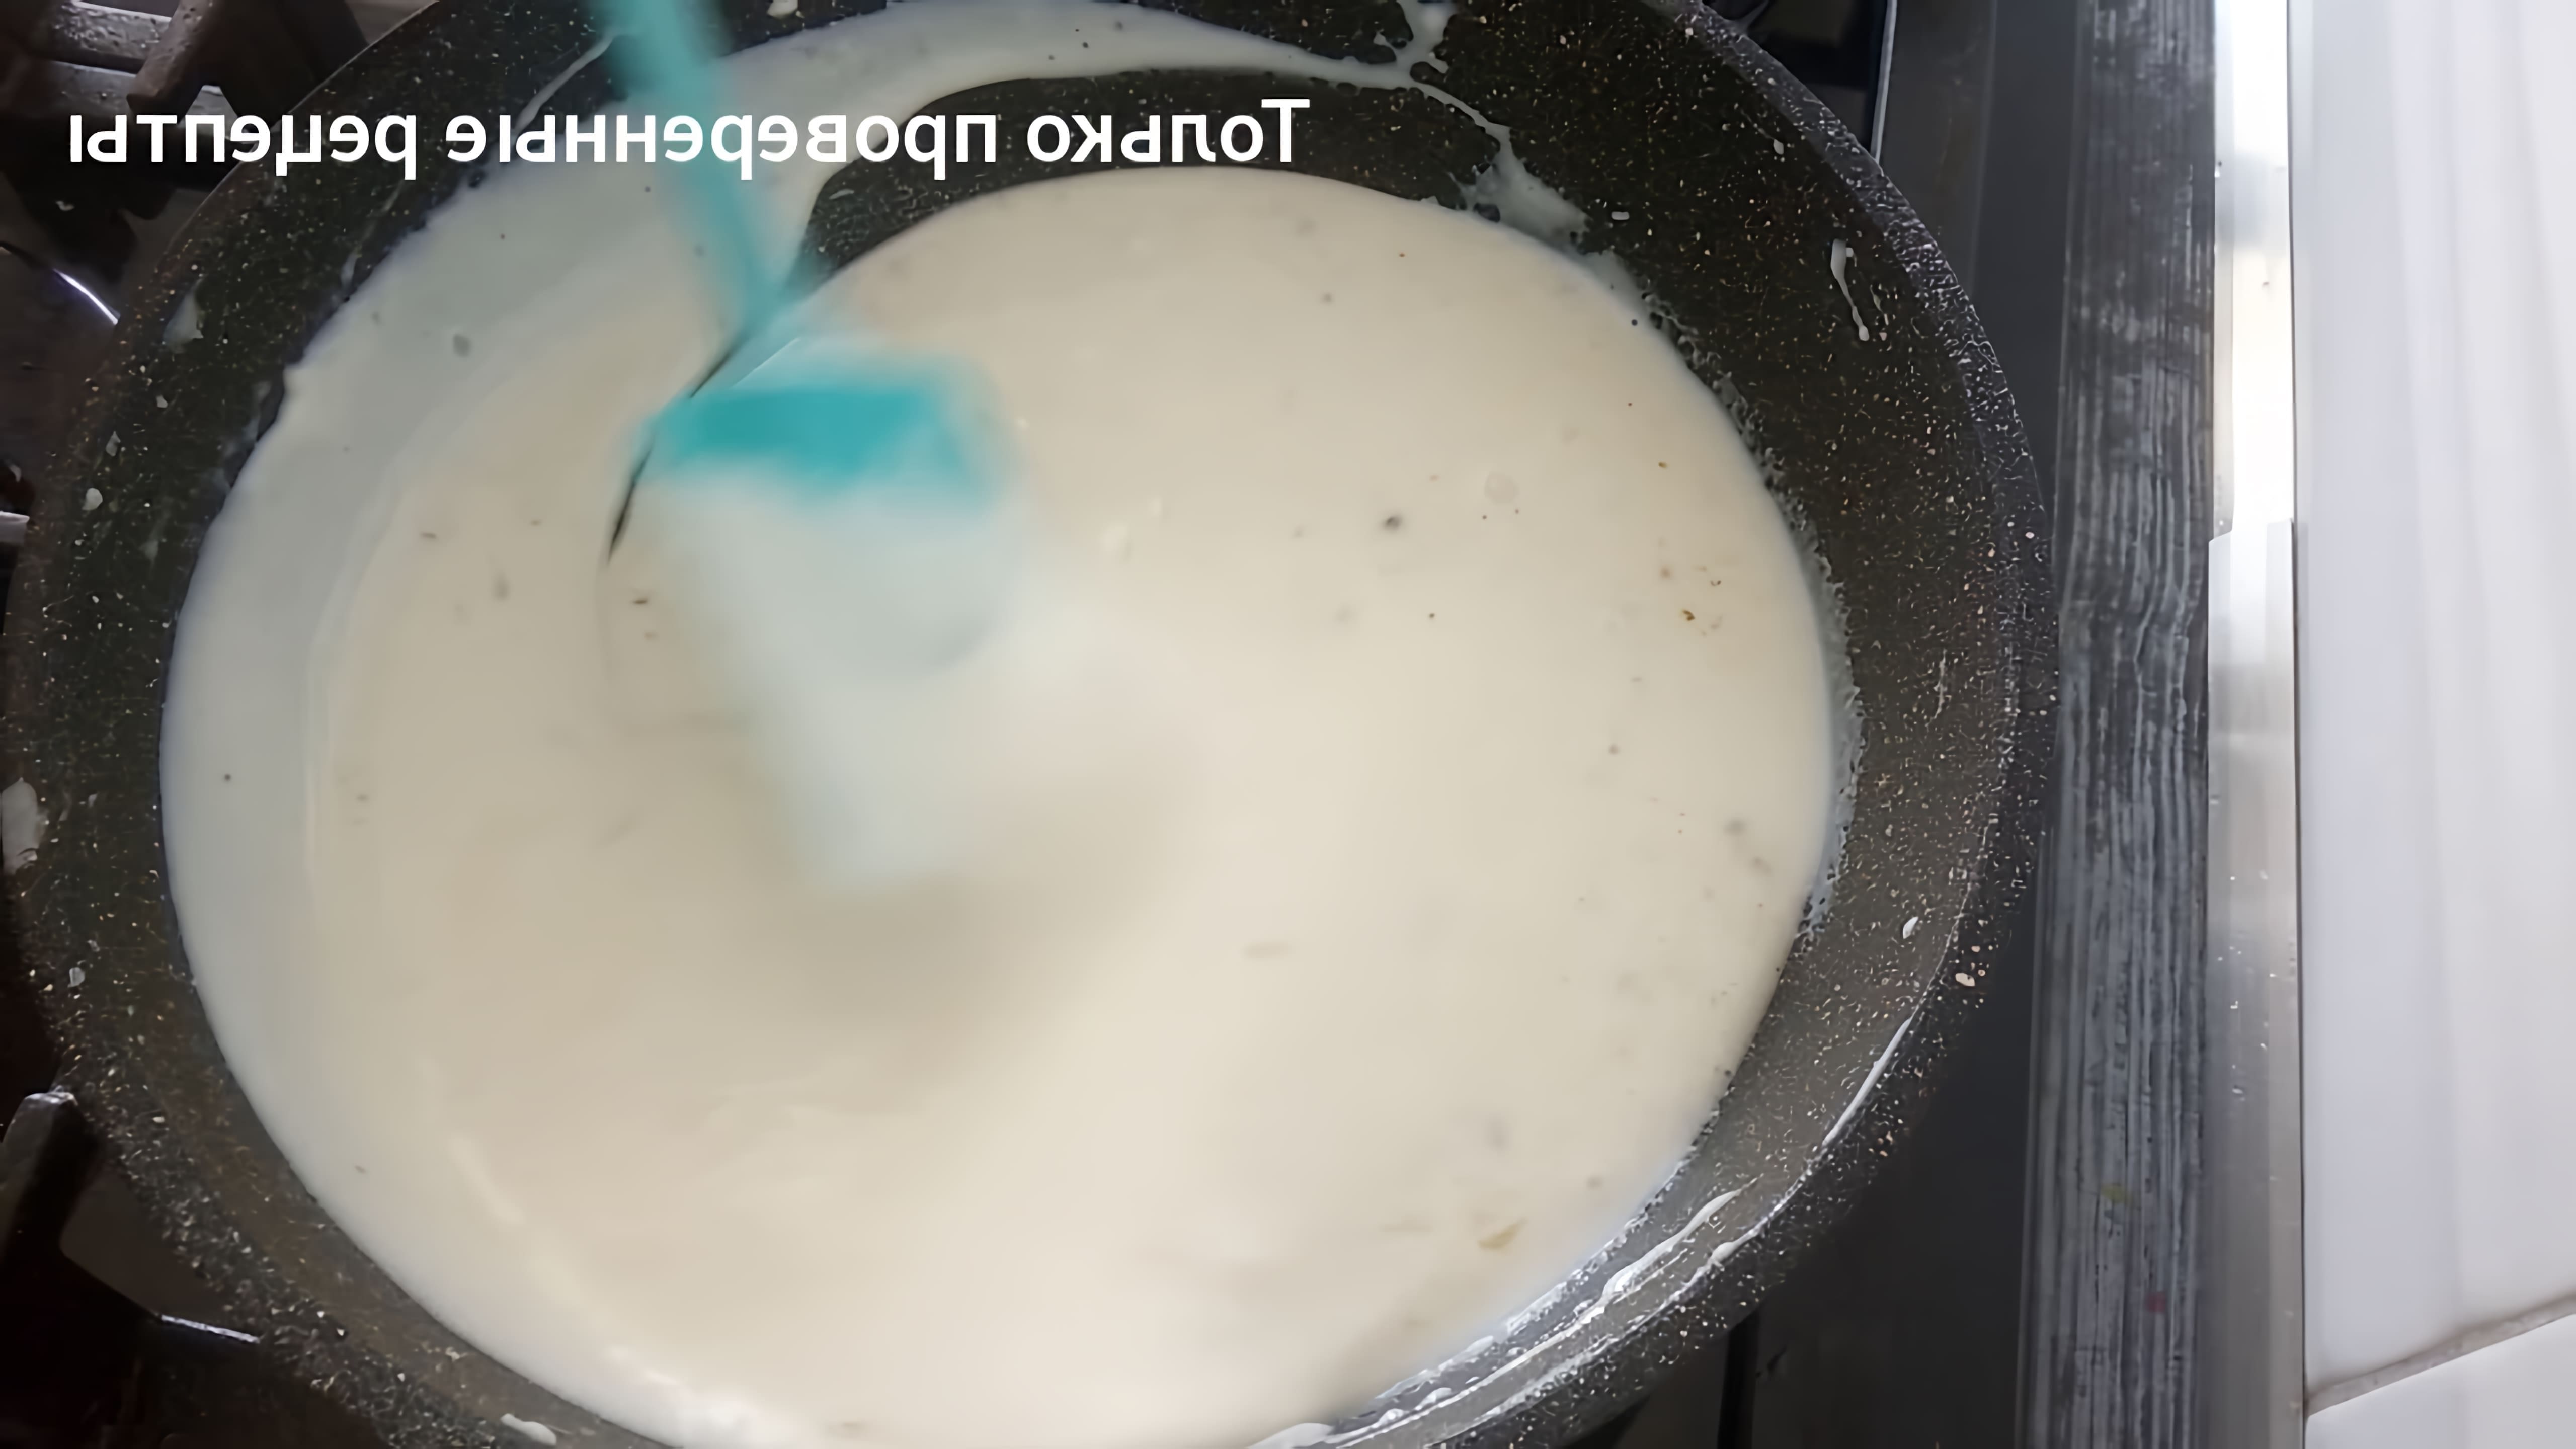 В этом видео демонстрируется приготовление молочного соуса, который можно использовать в различных блюдах